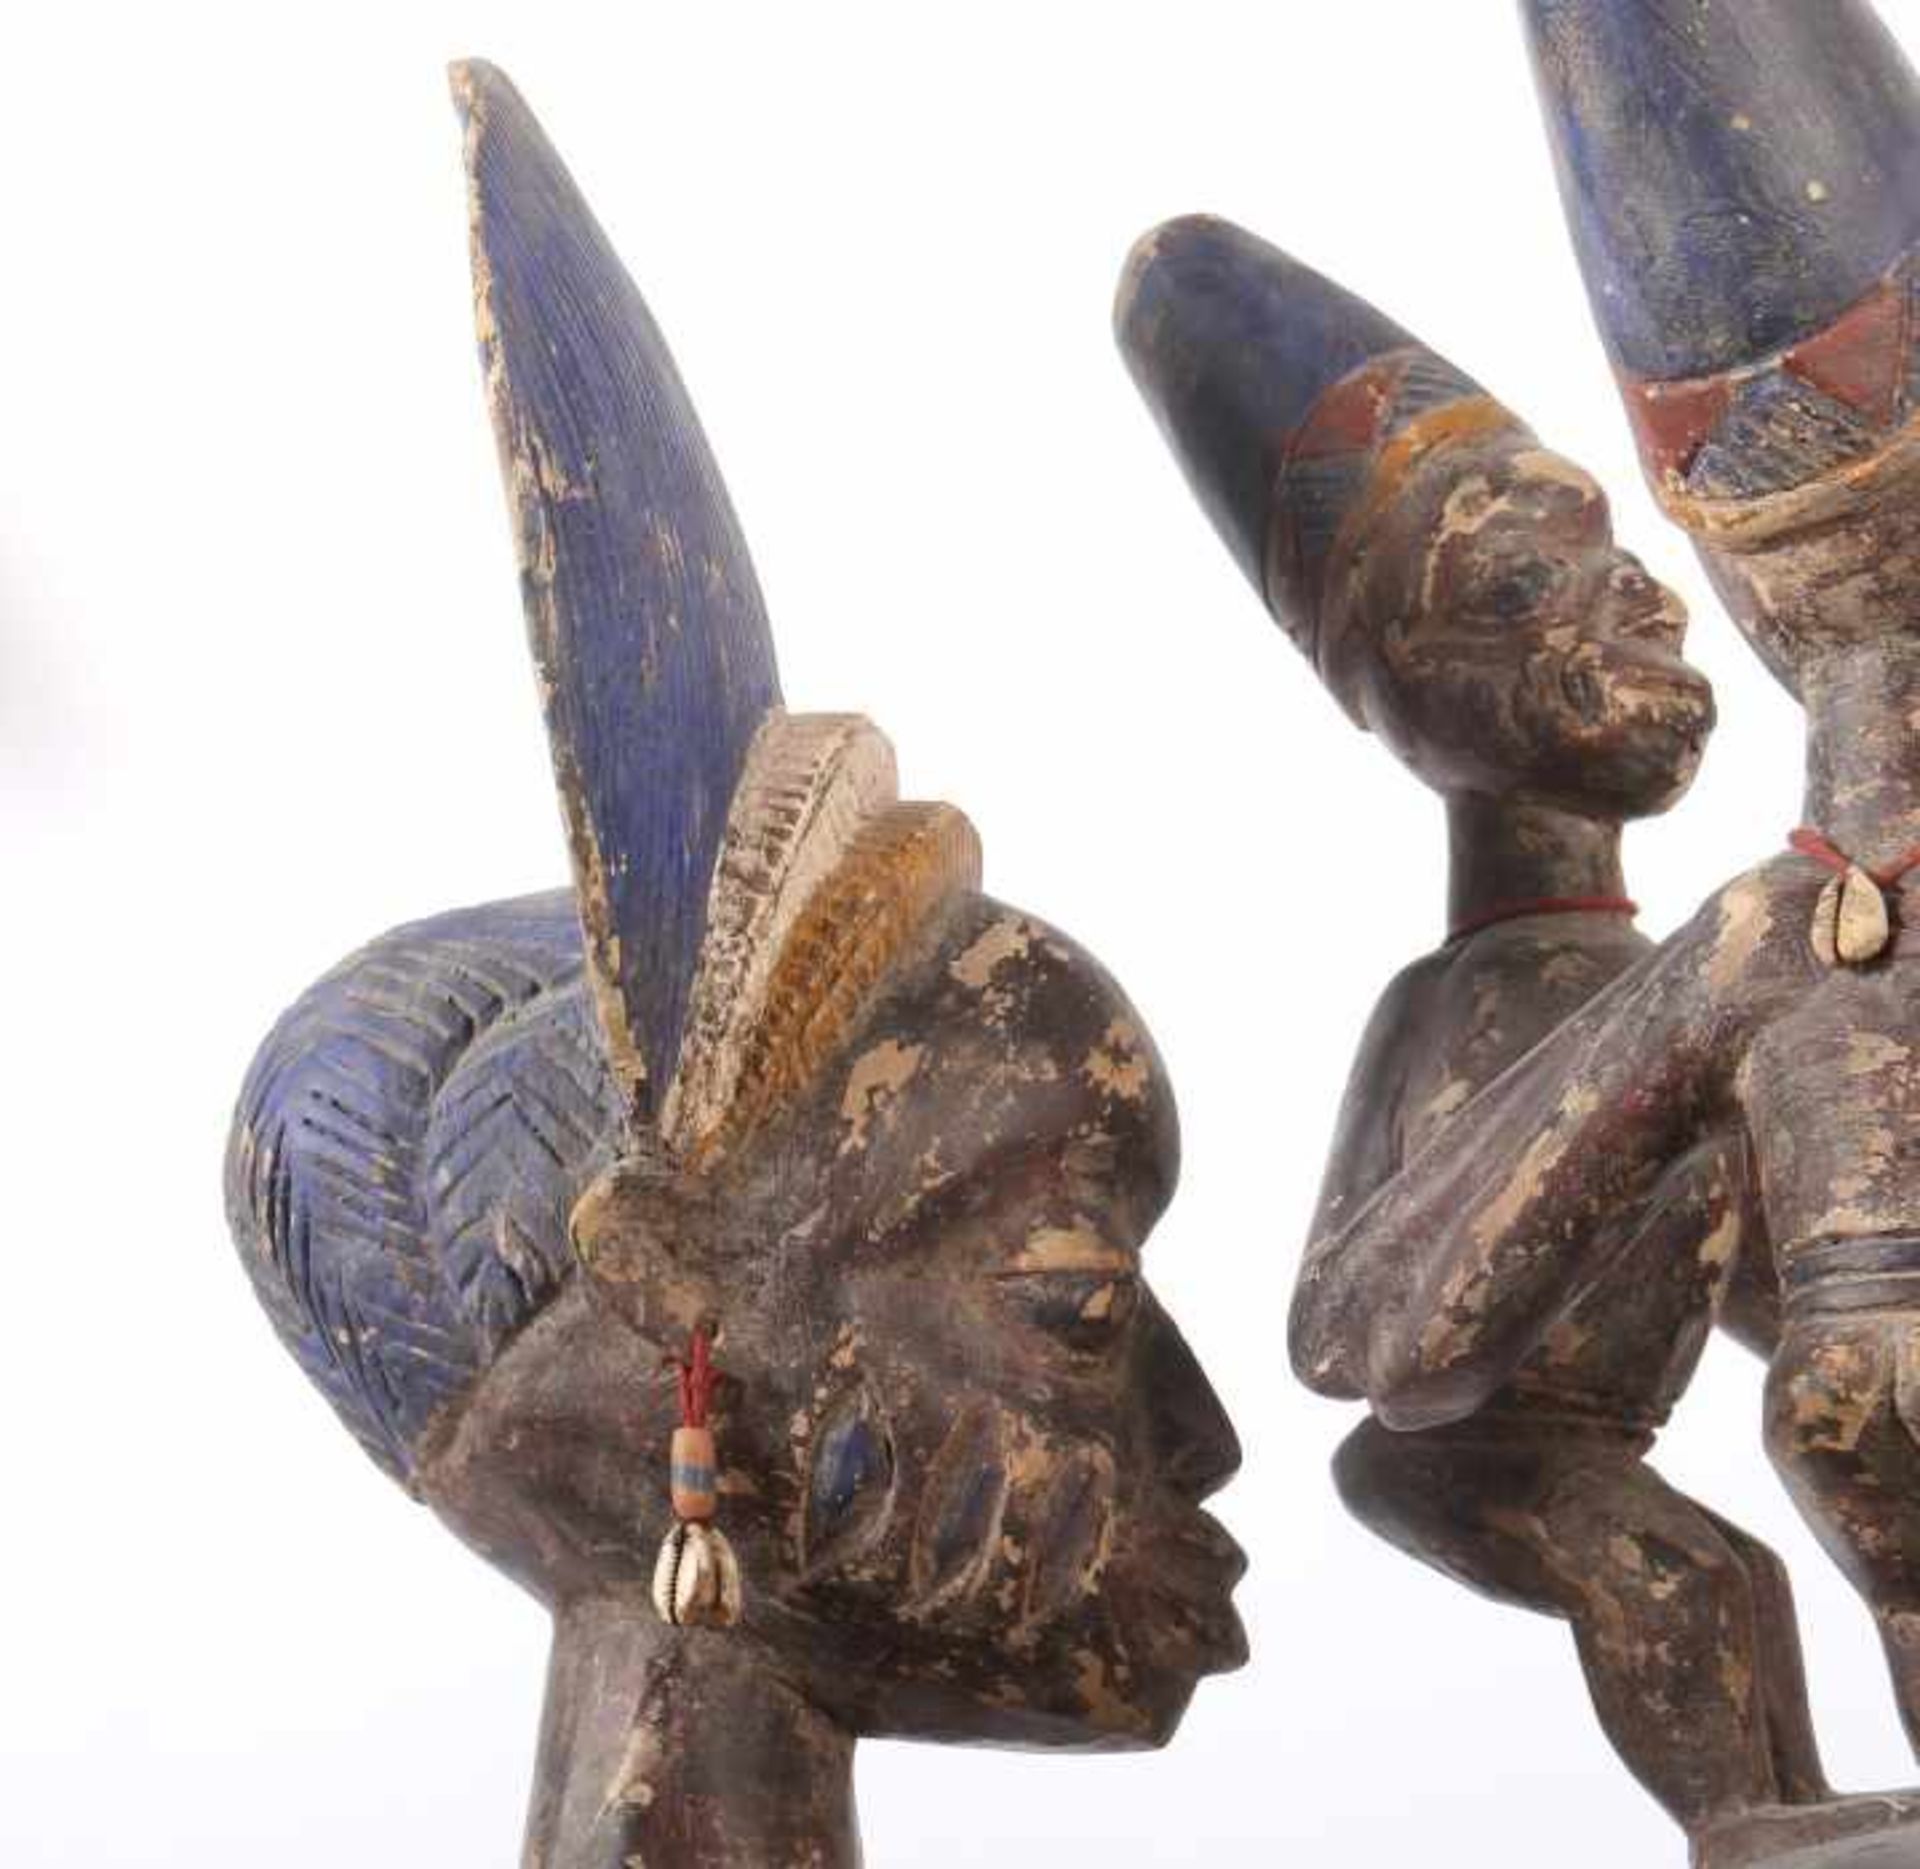 Großes Olumeye-GefäßNigeria, Stamm der Yoruba, 5 Trägerfiguren und 1 große Mutterfigur mit Kind - Image 7 of 10